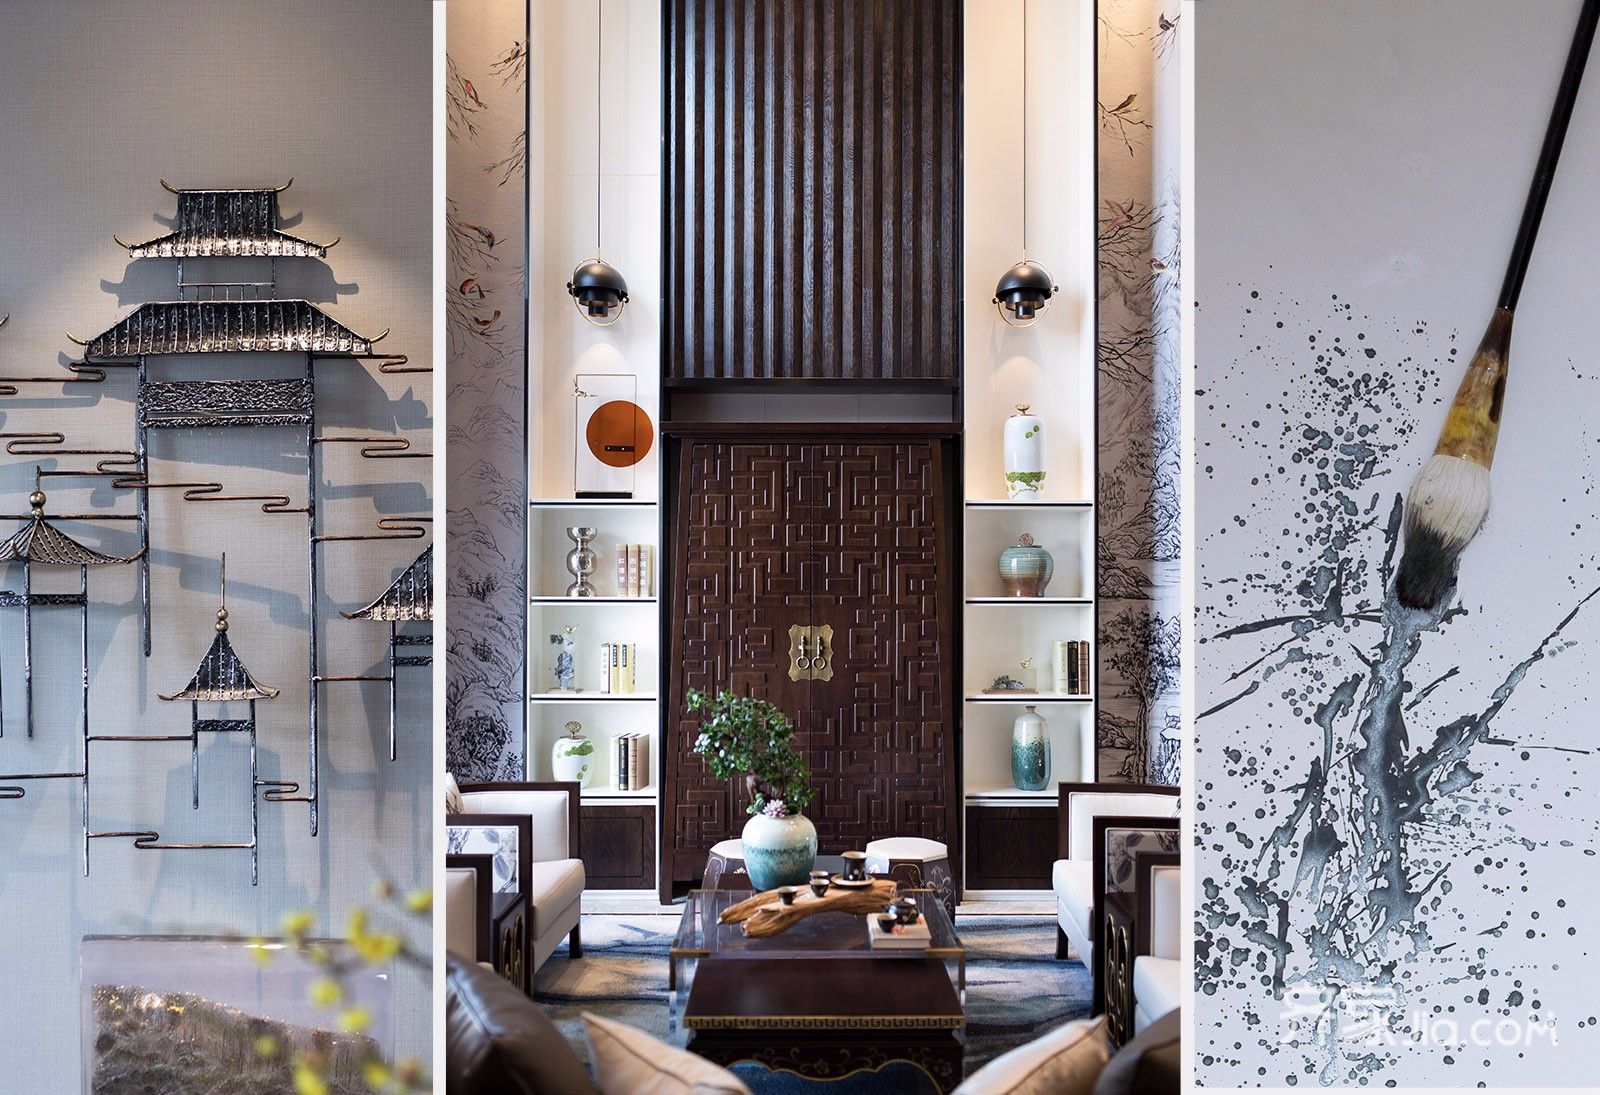 新中式别墅客厅装修效果图